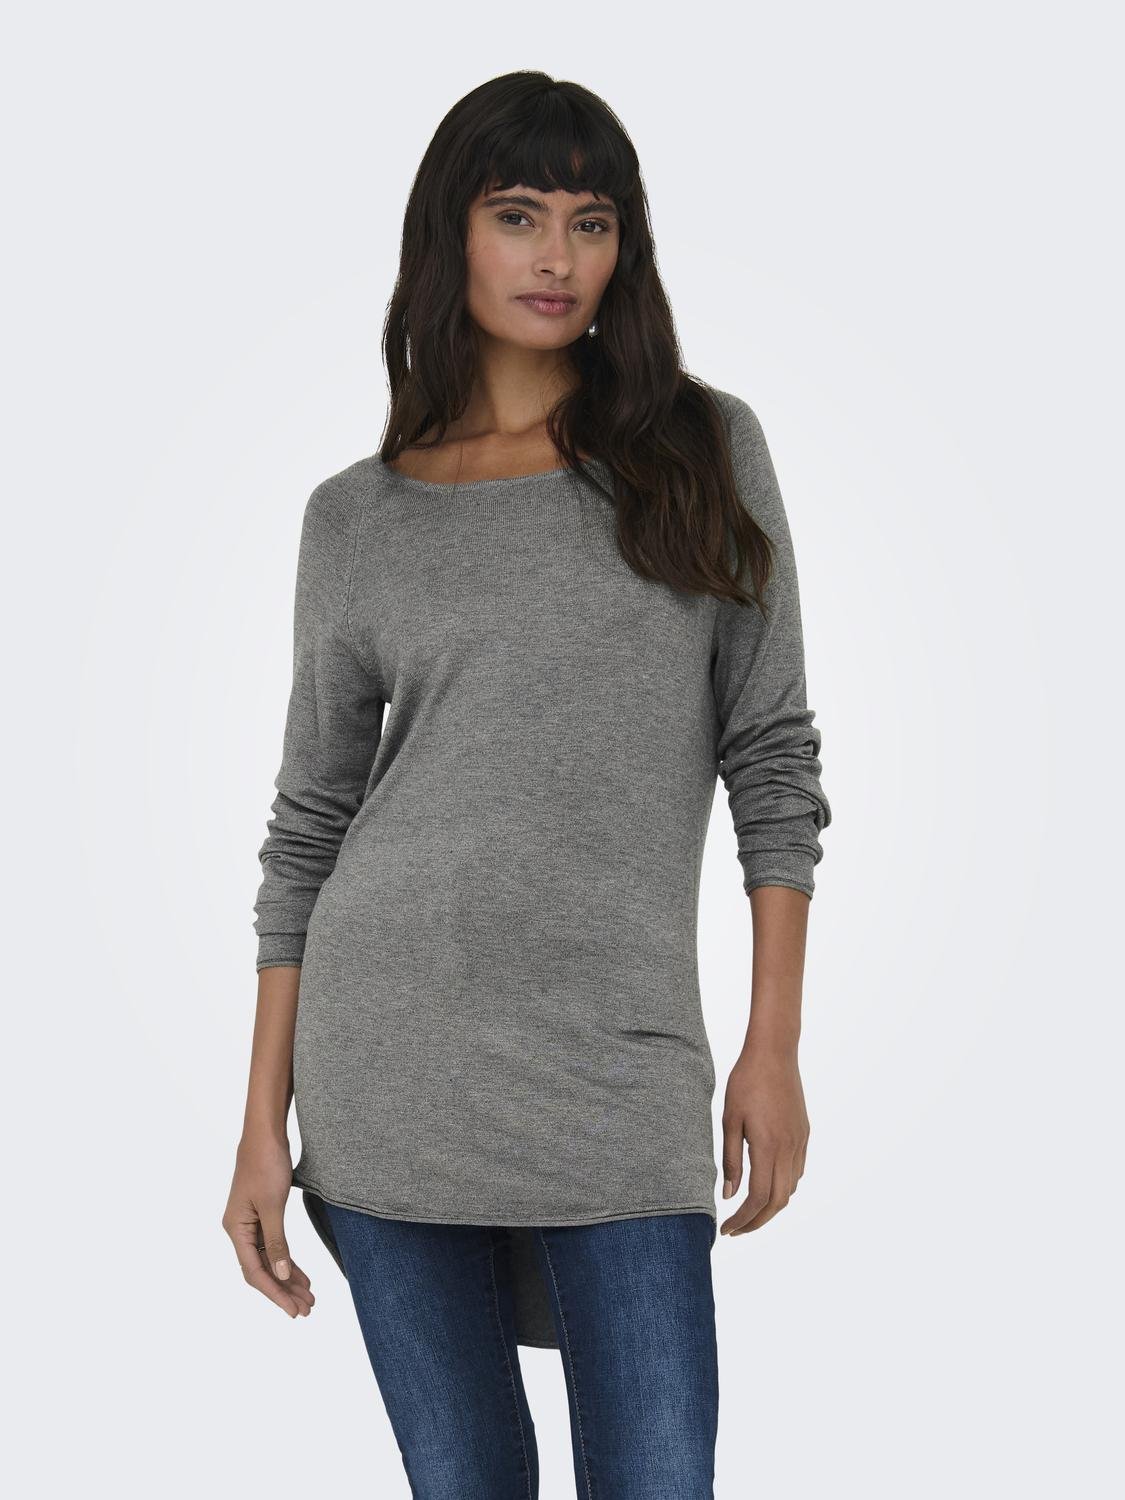 ONLY Round Neck Pullover -Medium Grey Melange - 15202654